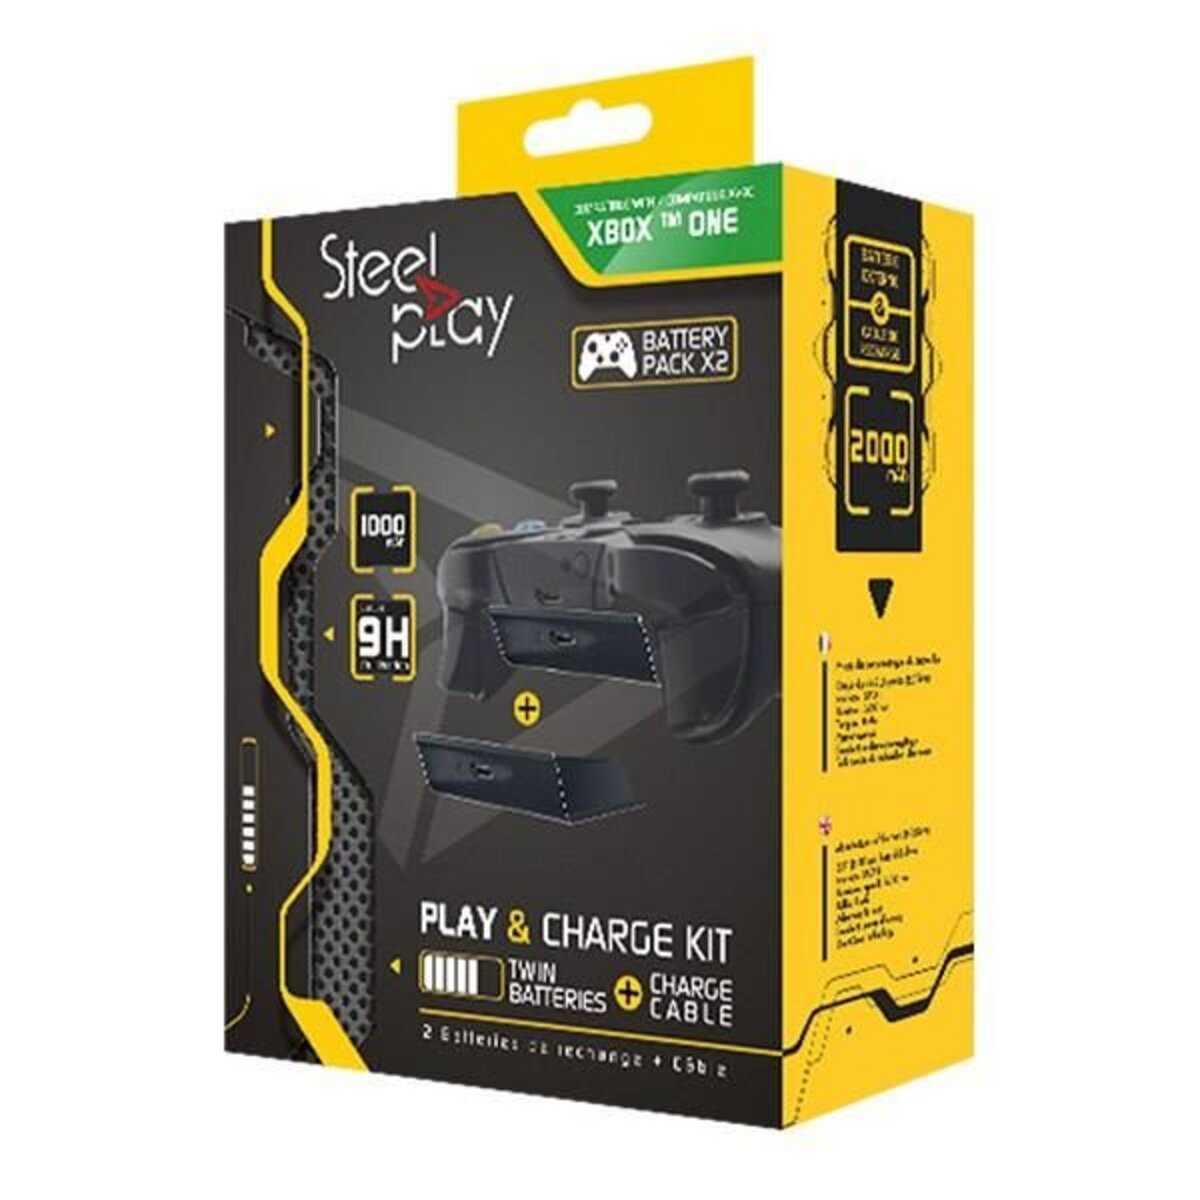 STEELPLAY Cable manette xbox one avec kit de charge et jeu 2 batteries